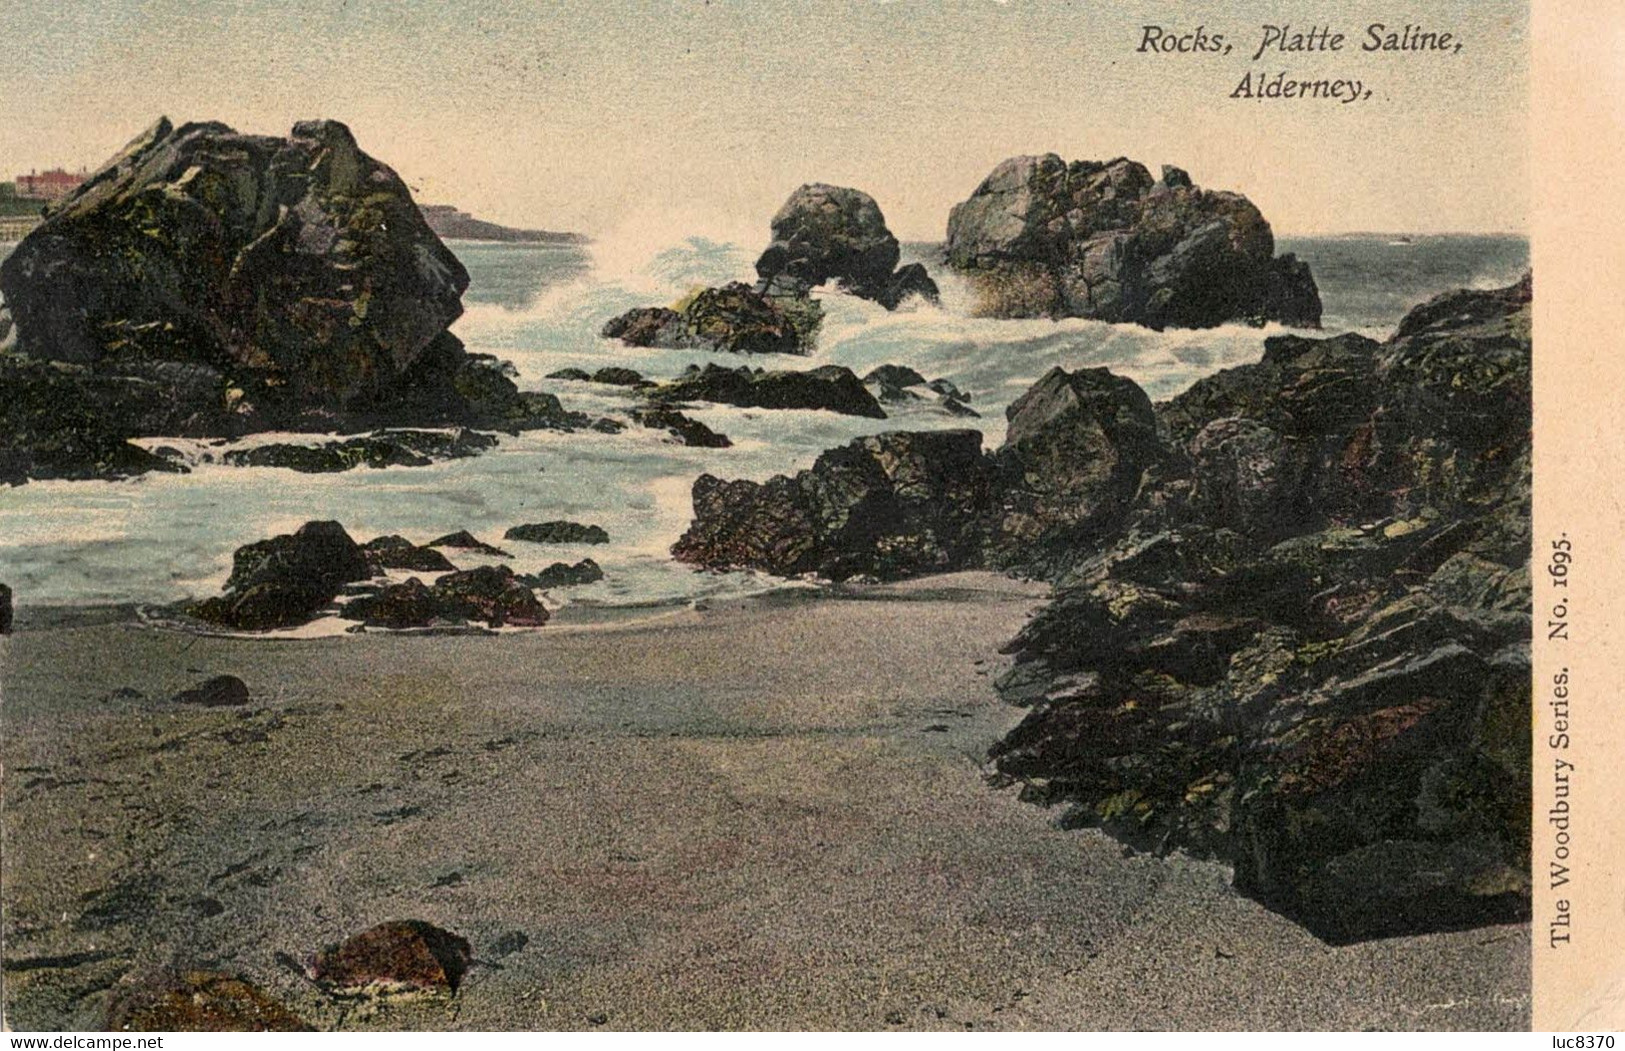 25.08.1909 - Alderney > Londen - Rocks Platte Saline Alderney (# 44) - Alderney